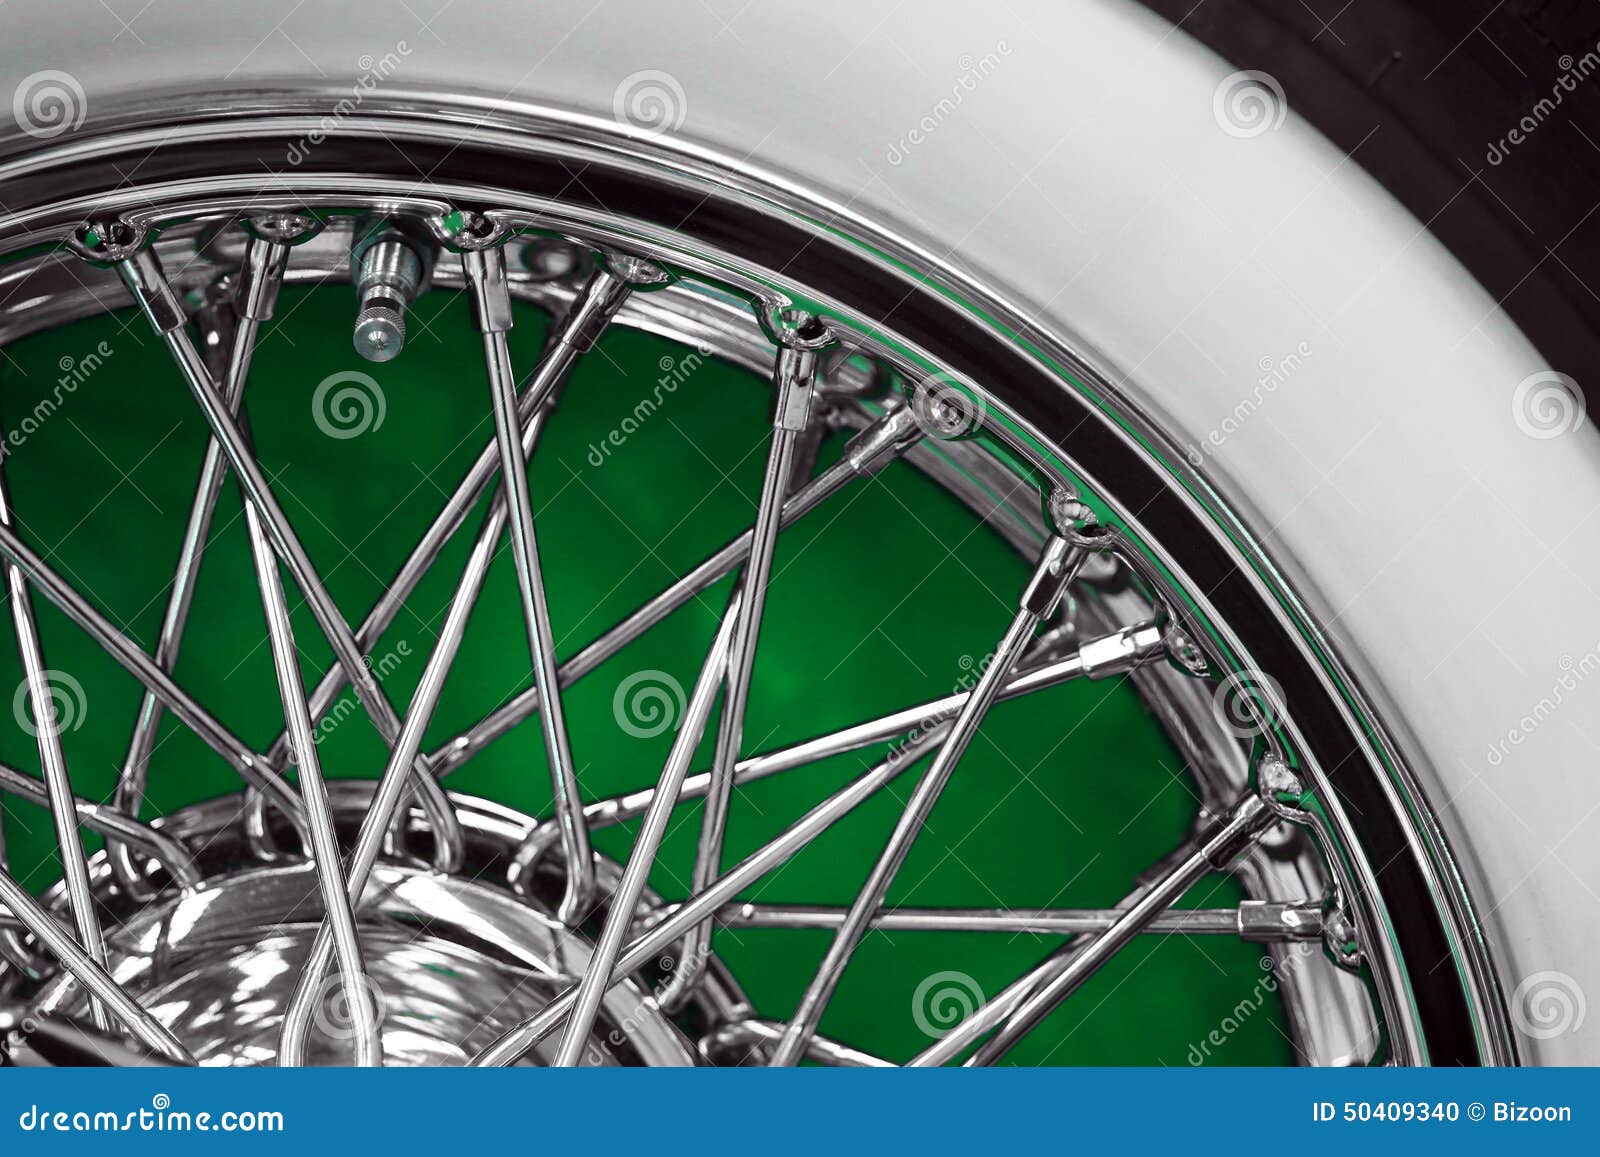 vintage car spoke wheel